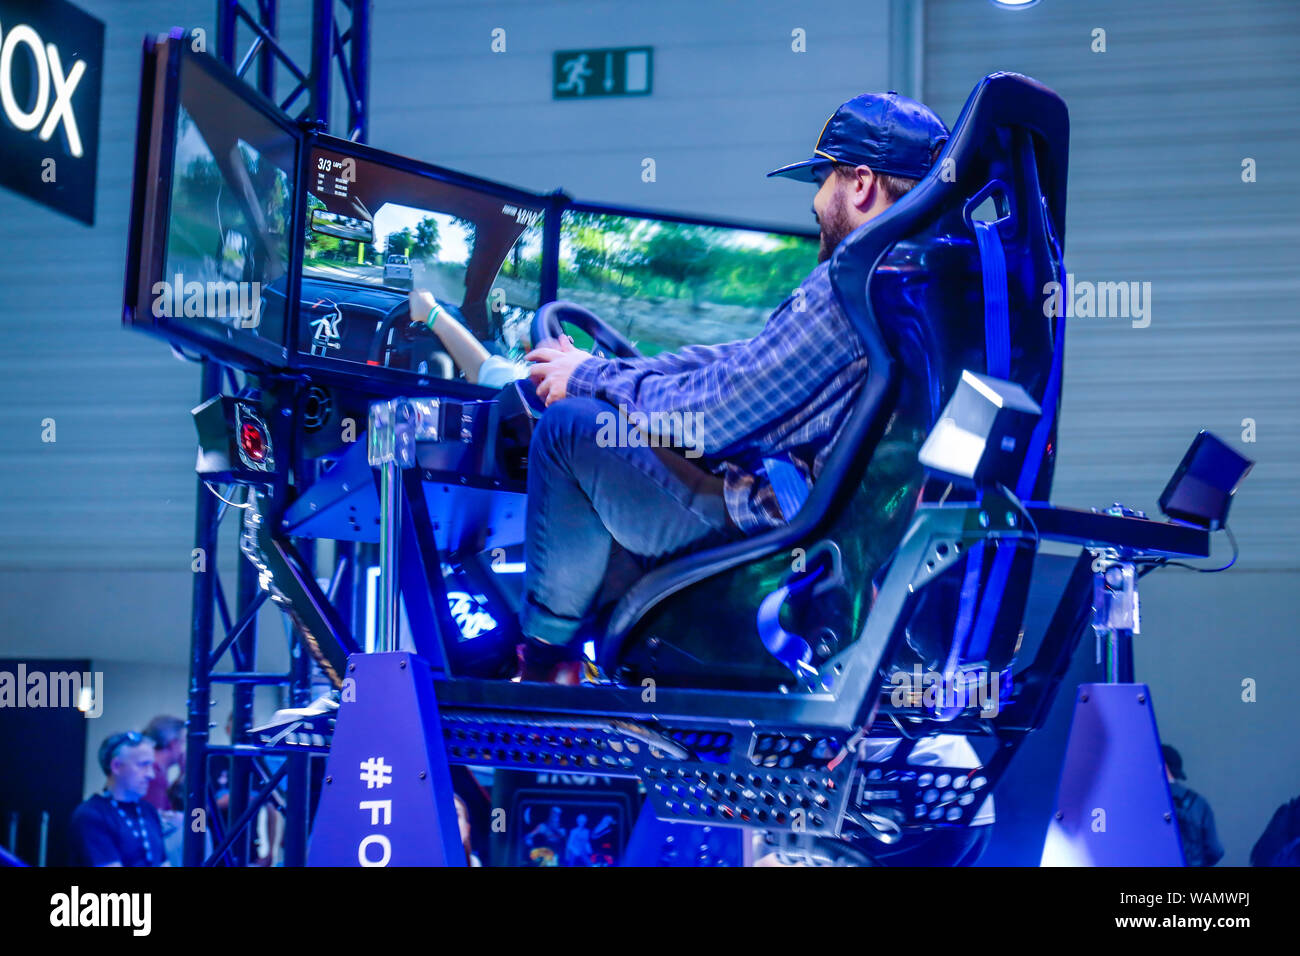 Colonia, nella Renania settentrionale-Vestfalia, Germania - Gamescom, i visitatori della fiera giocare il gioco per computer simulatore di guida da Ford RaptorMania al Gamesco Foto Stock